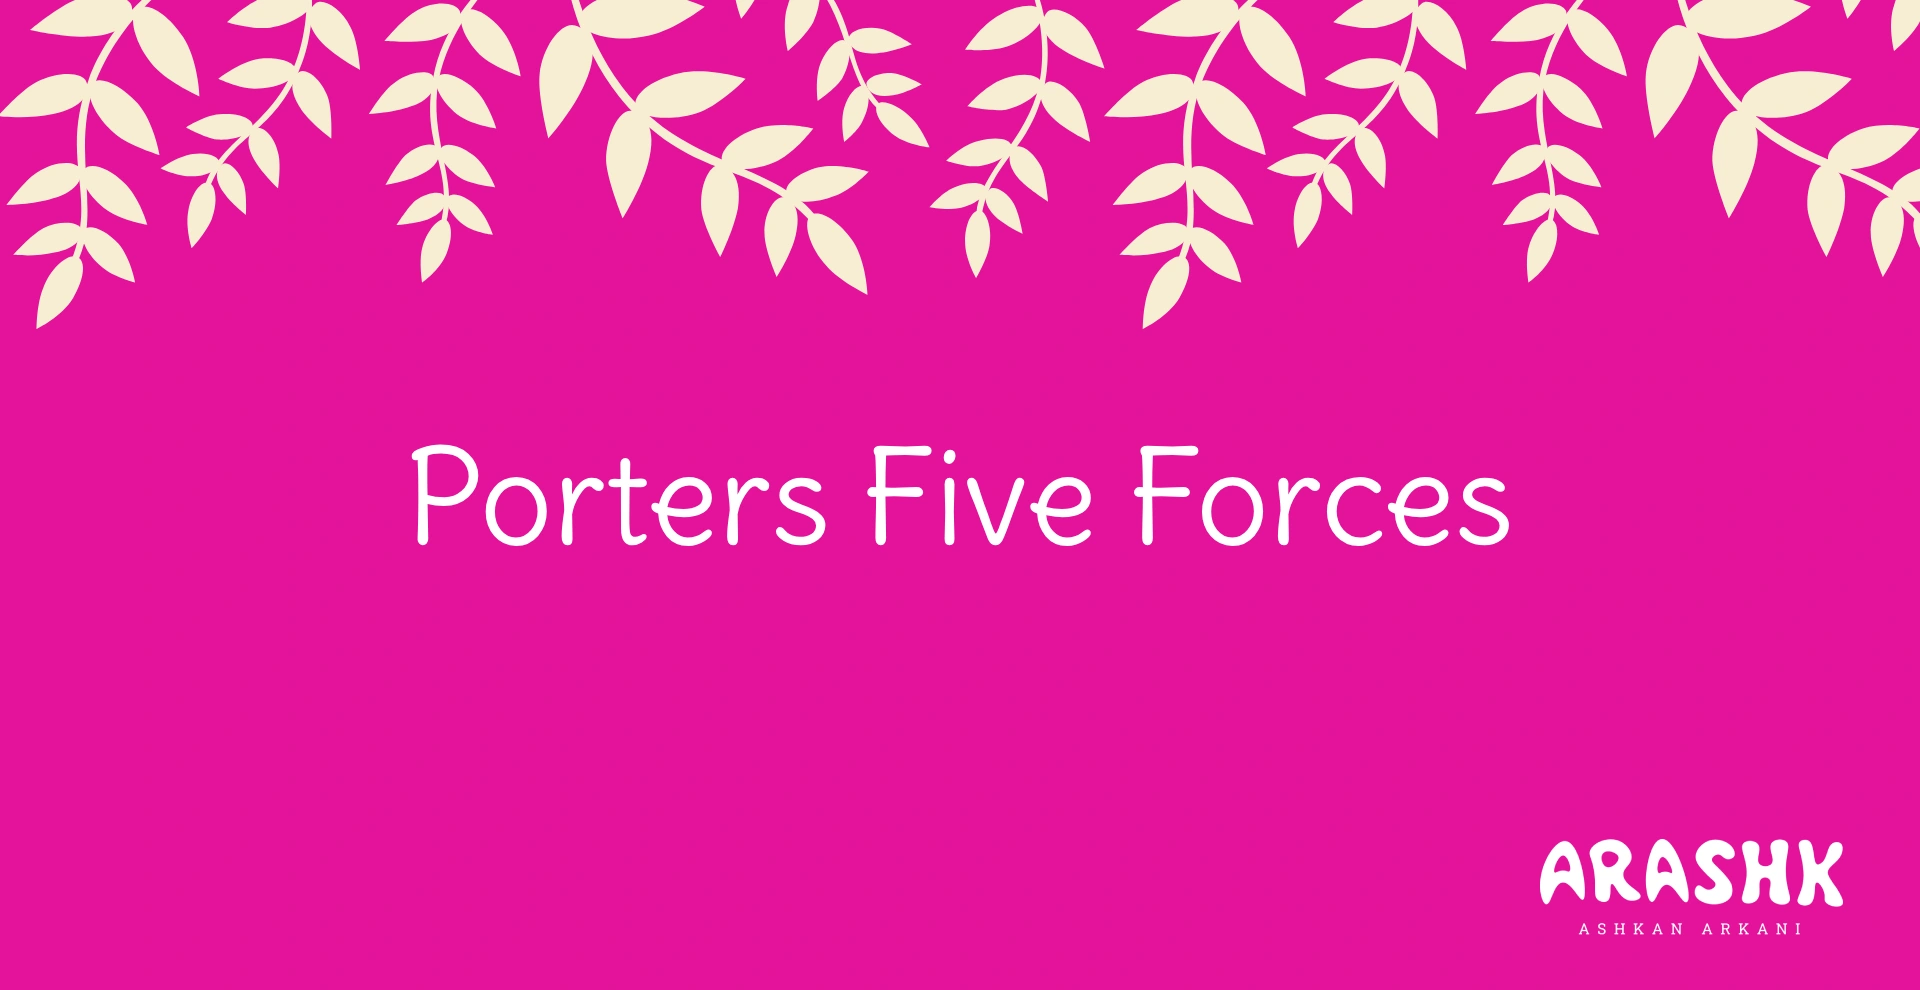 پنج نیروی پورتر